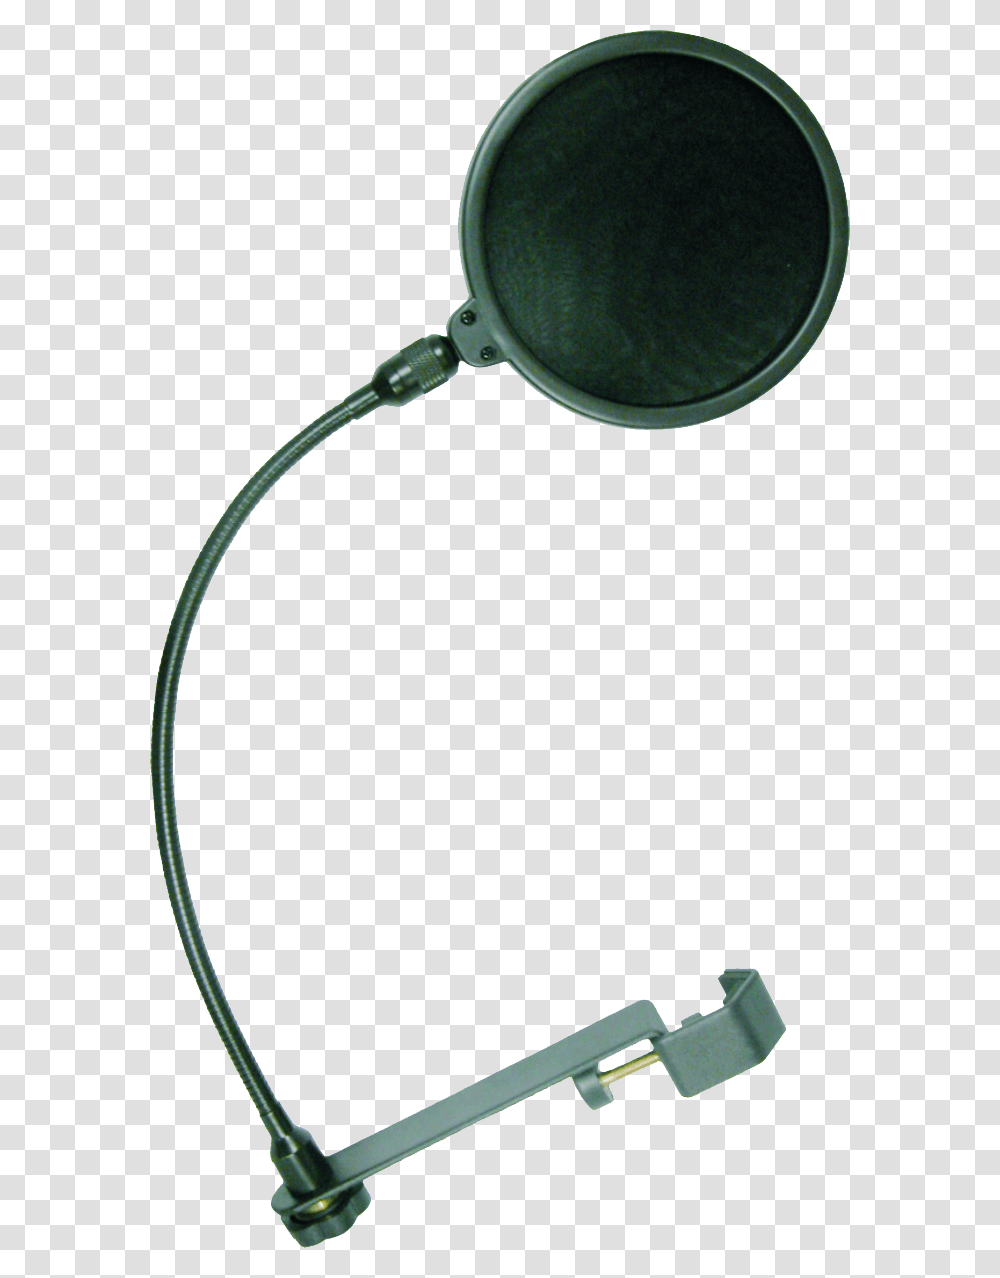 Microphone Pop Filter Pop Filter, Adapter, Indoors, Plug, Frying Pan Transparent Png